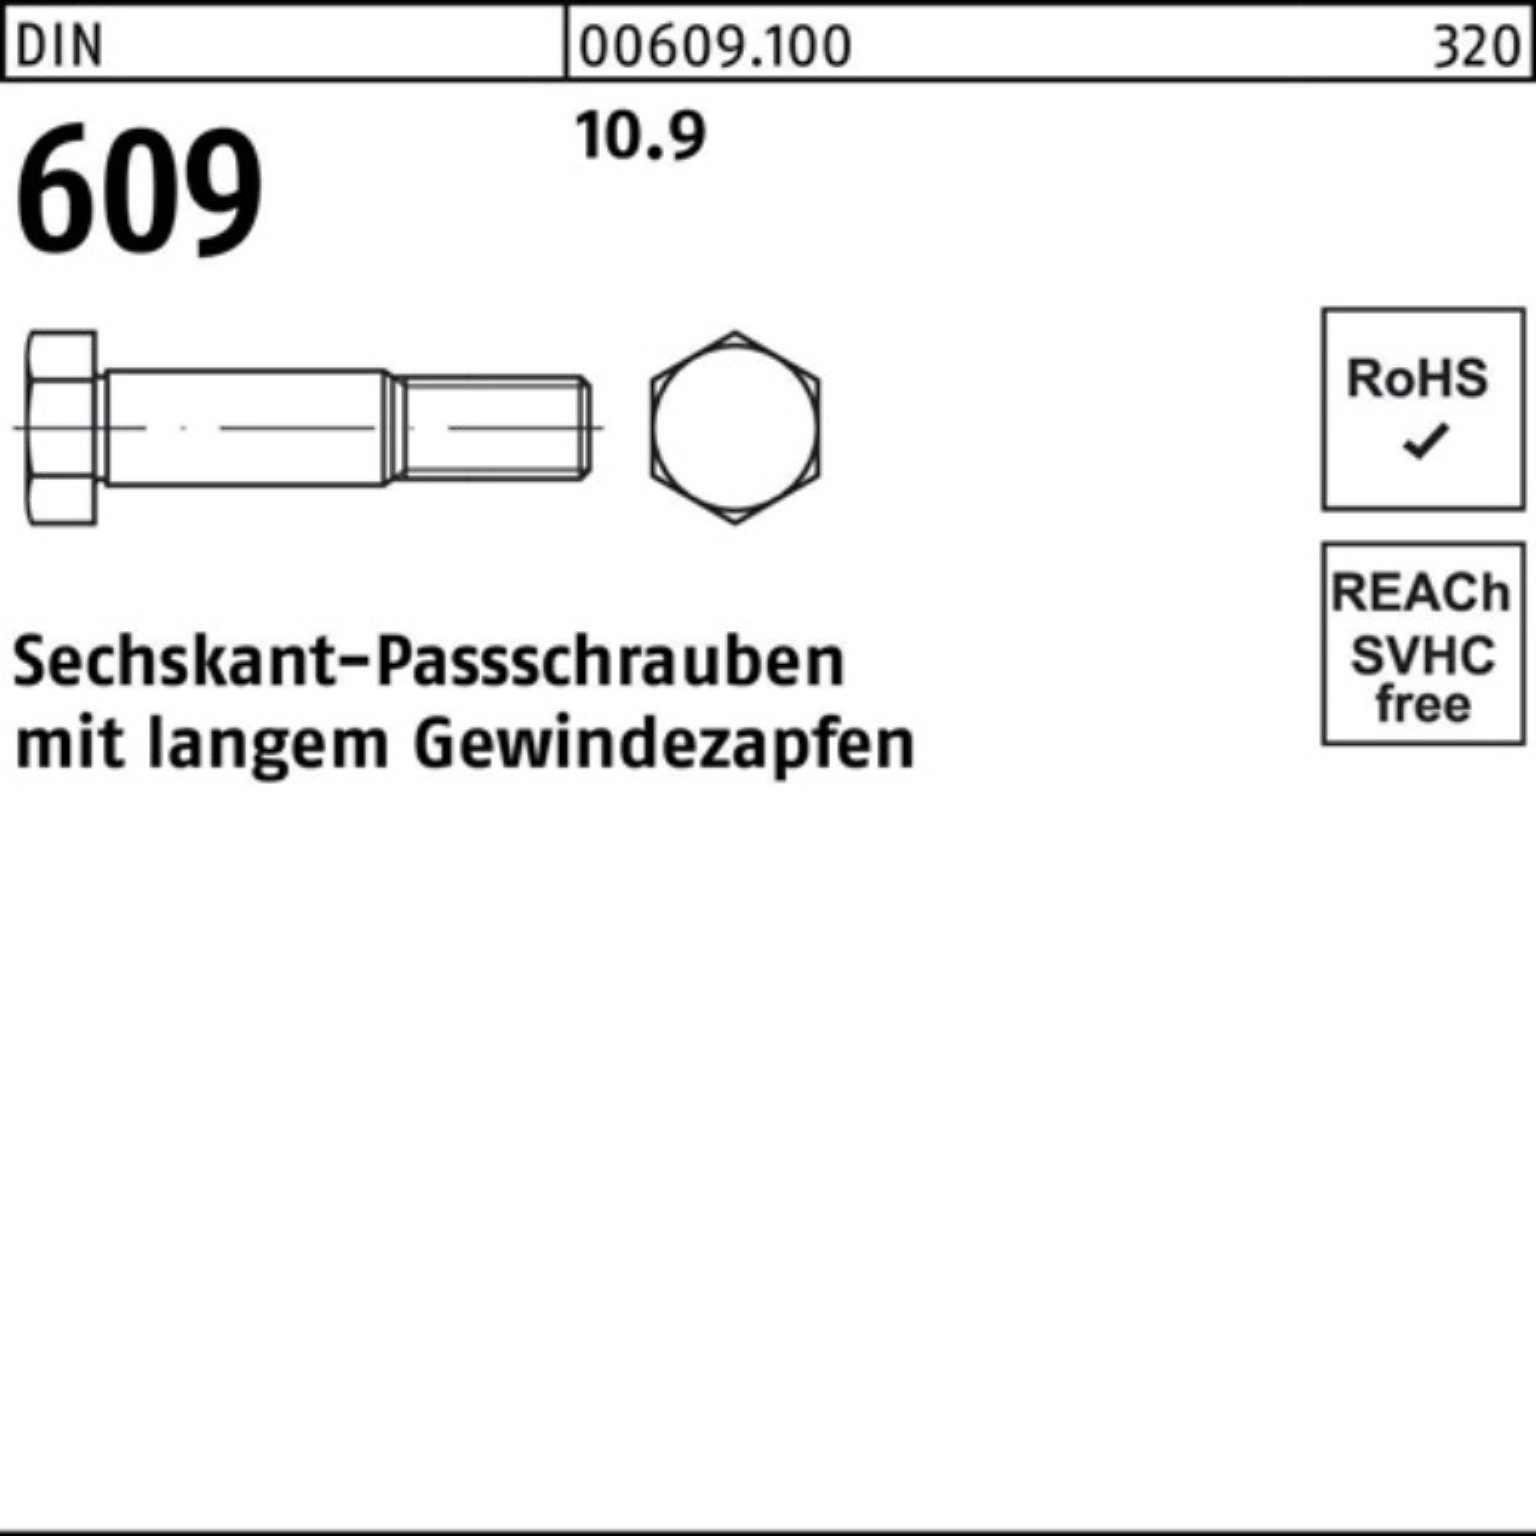 Reyher Schraube 100er Pack Sechskantpassschraube Gewindezapfen DIN M16x 609 langem 70